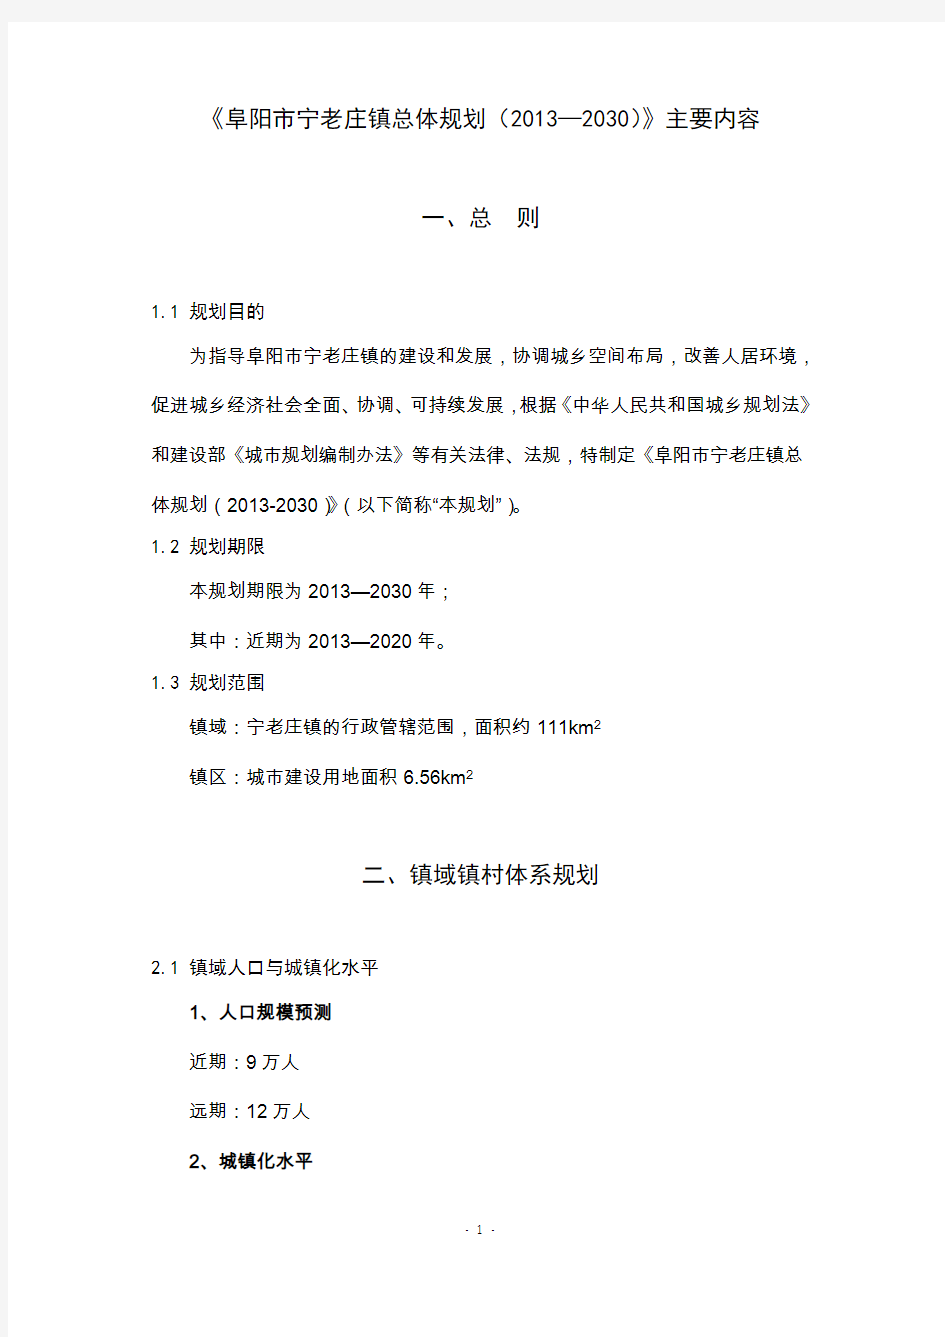 《阜阳市宁老庄镇总体规划(2013—2030)》主要内容